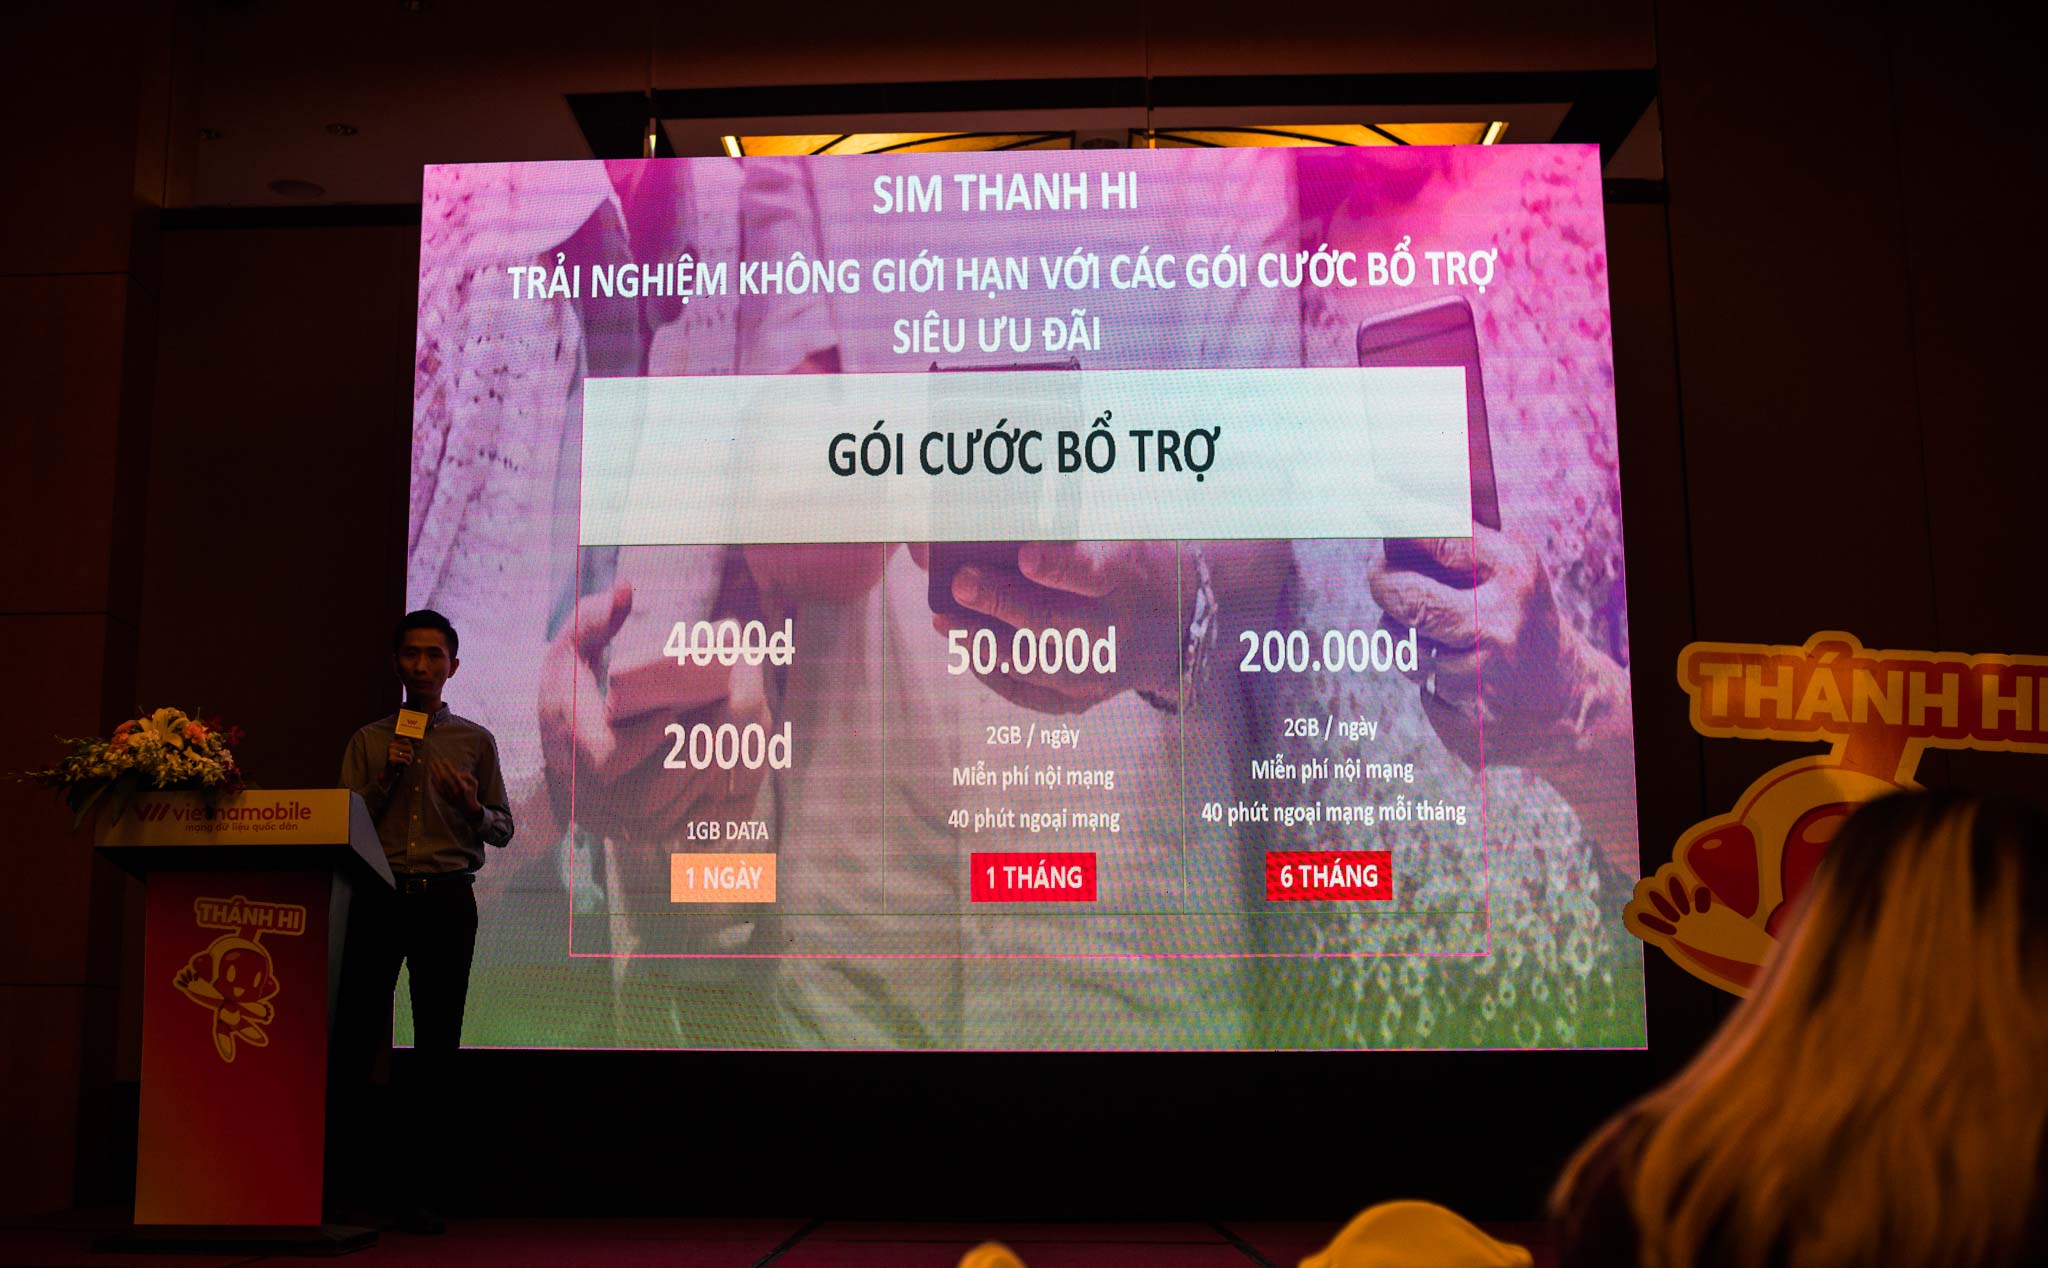 Vietnamobile ra mắt Sim THÁNH HI - 20k/tháng với data không giới hạn, VoWIFI gọi điện bằng wifi